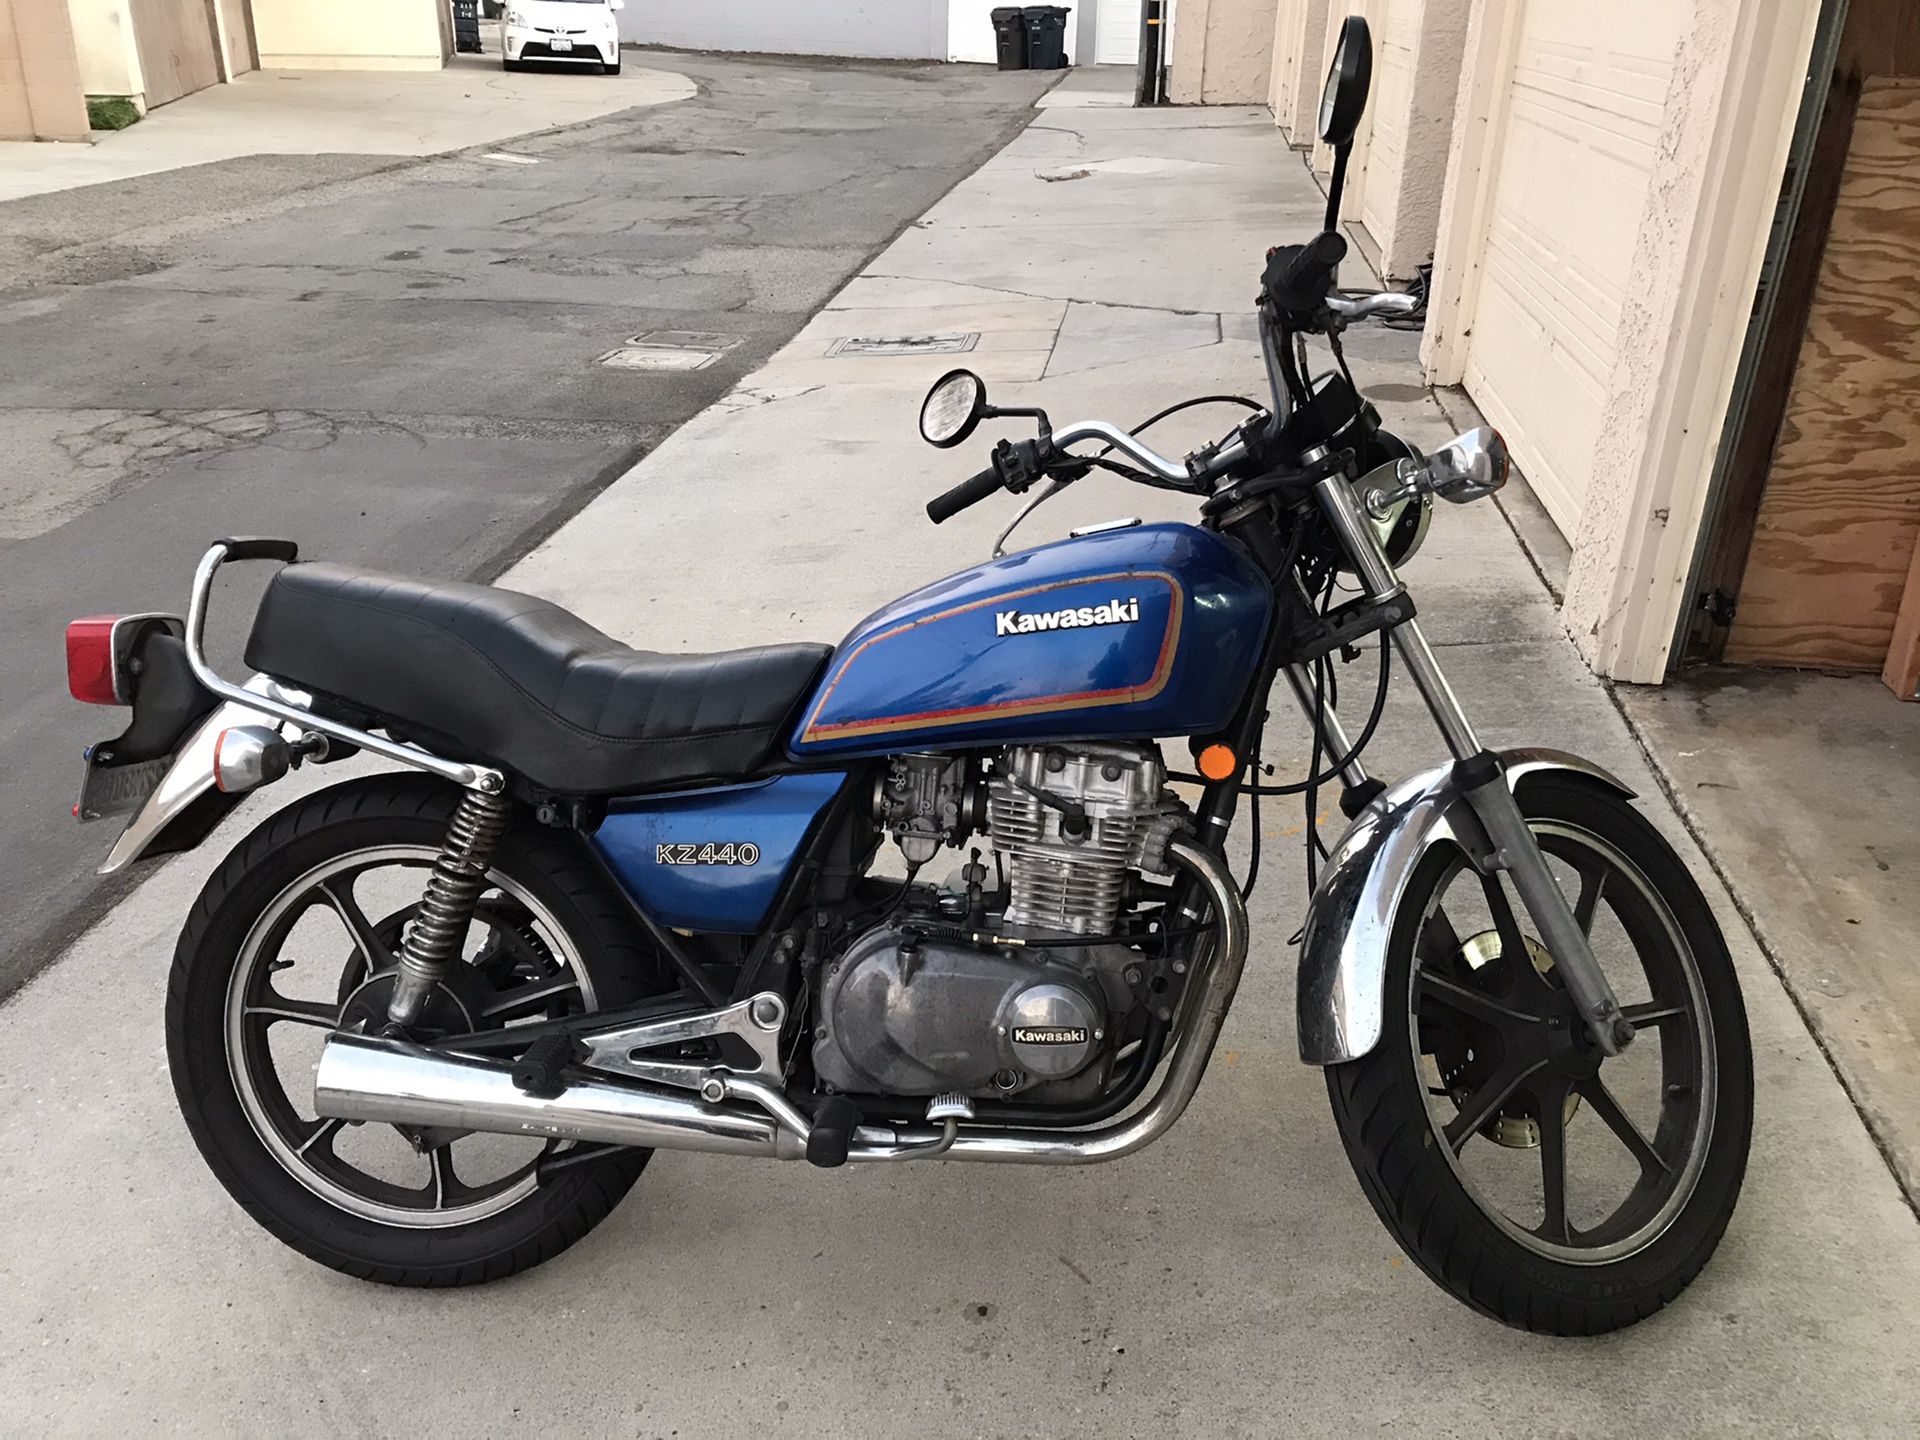 1982 Kawasaki KZ440 Motorcycle